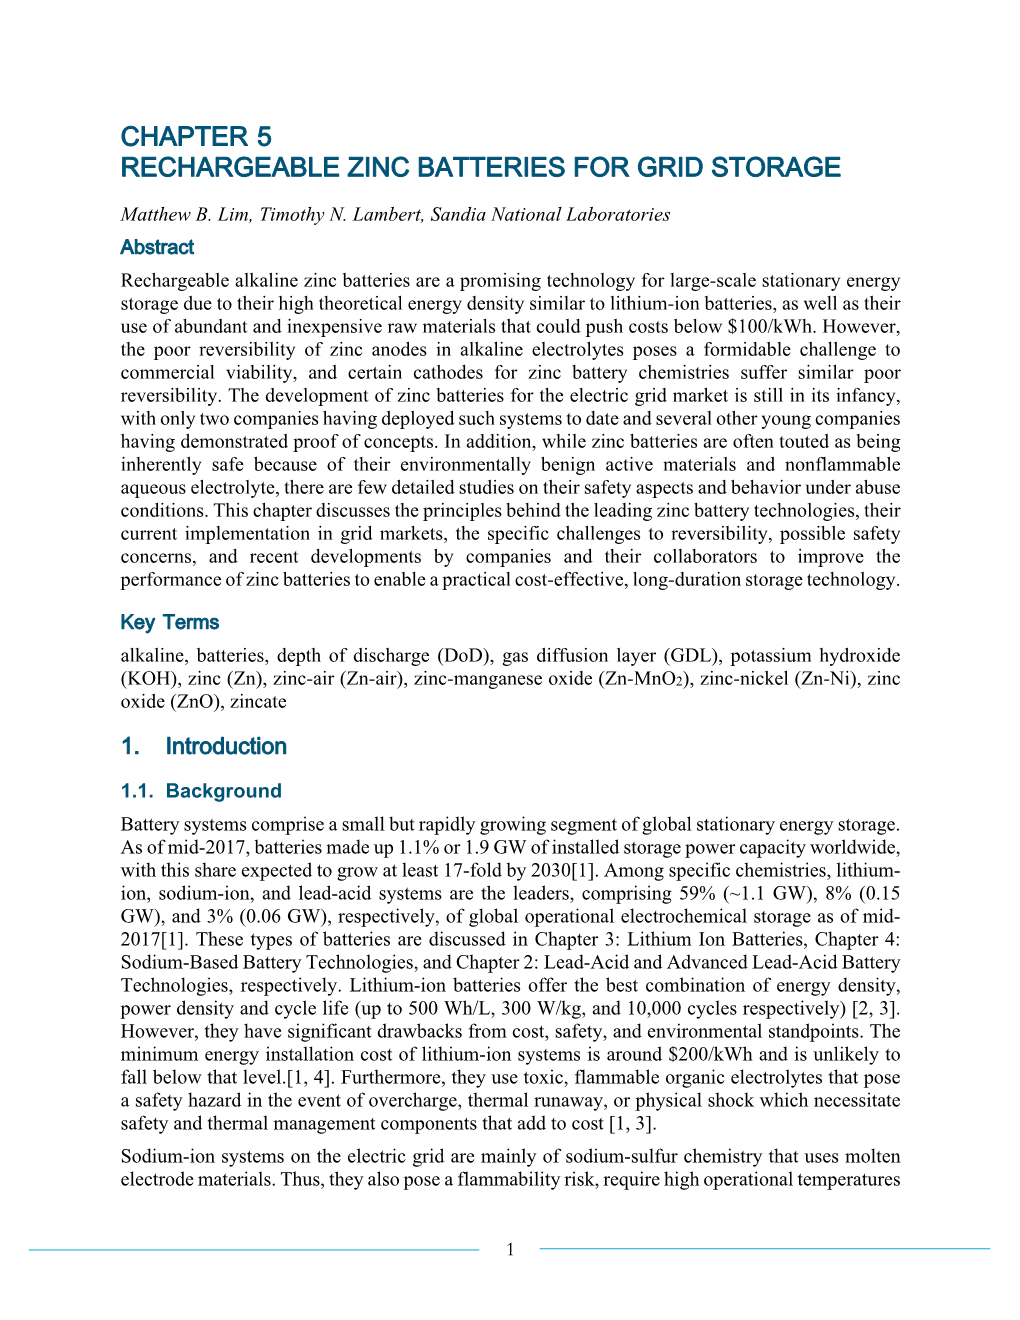 DOE ESHB Chapter 5 Rechargeable Zinc Batteries for Grid Storage